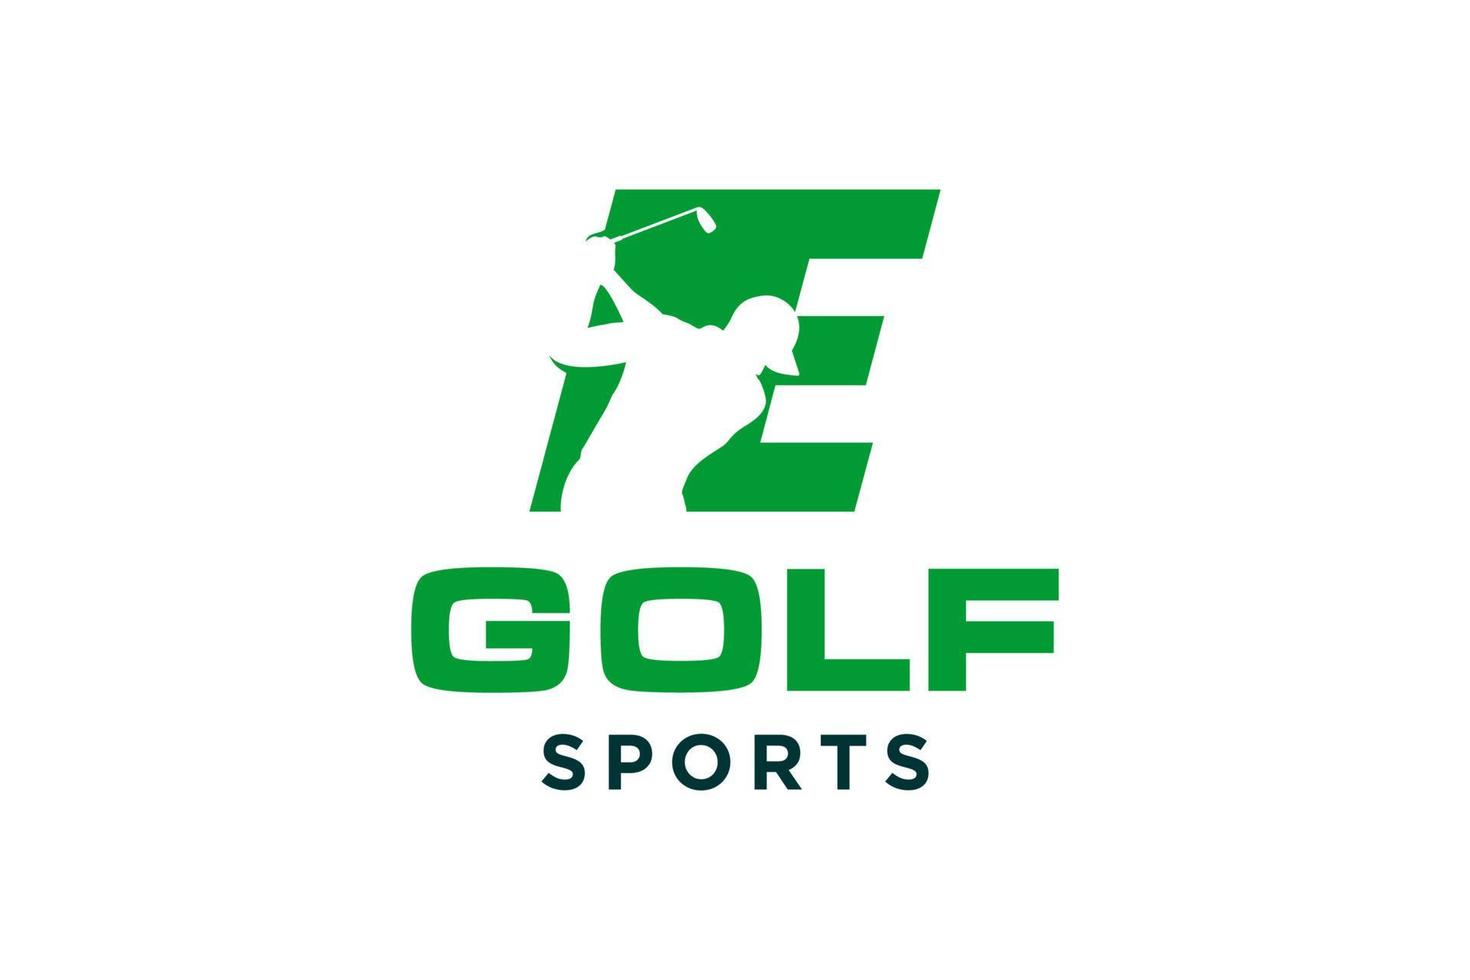 logo d'icône de lettre alphabet e pour modèle vectoriel de conception de logo de golf, étiquette vectorielle de golf, logo de championnat de golf, illustration, icône créative, concept de design